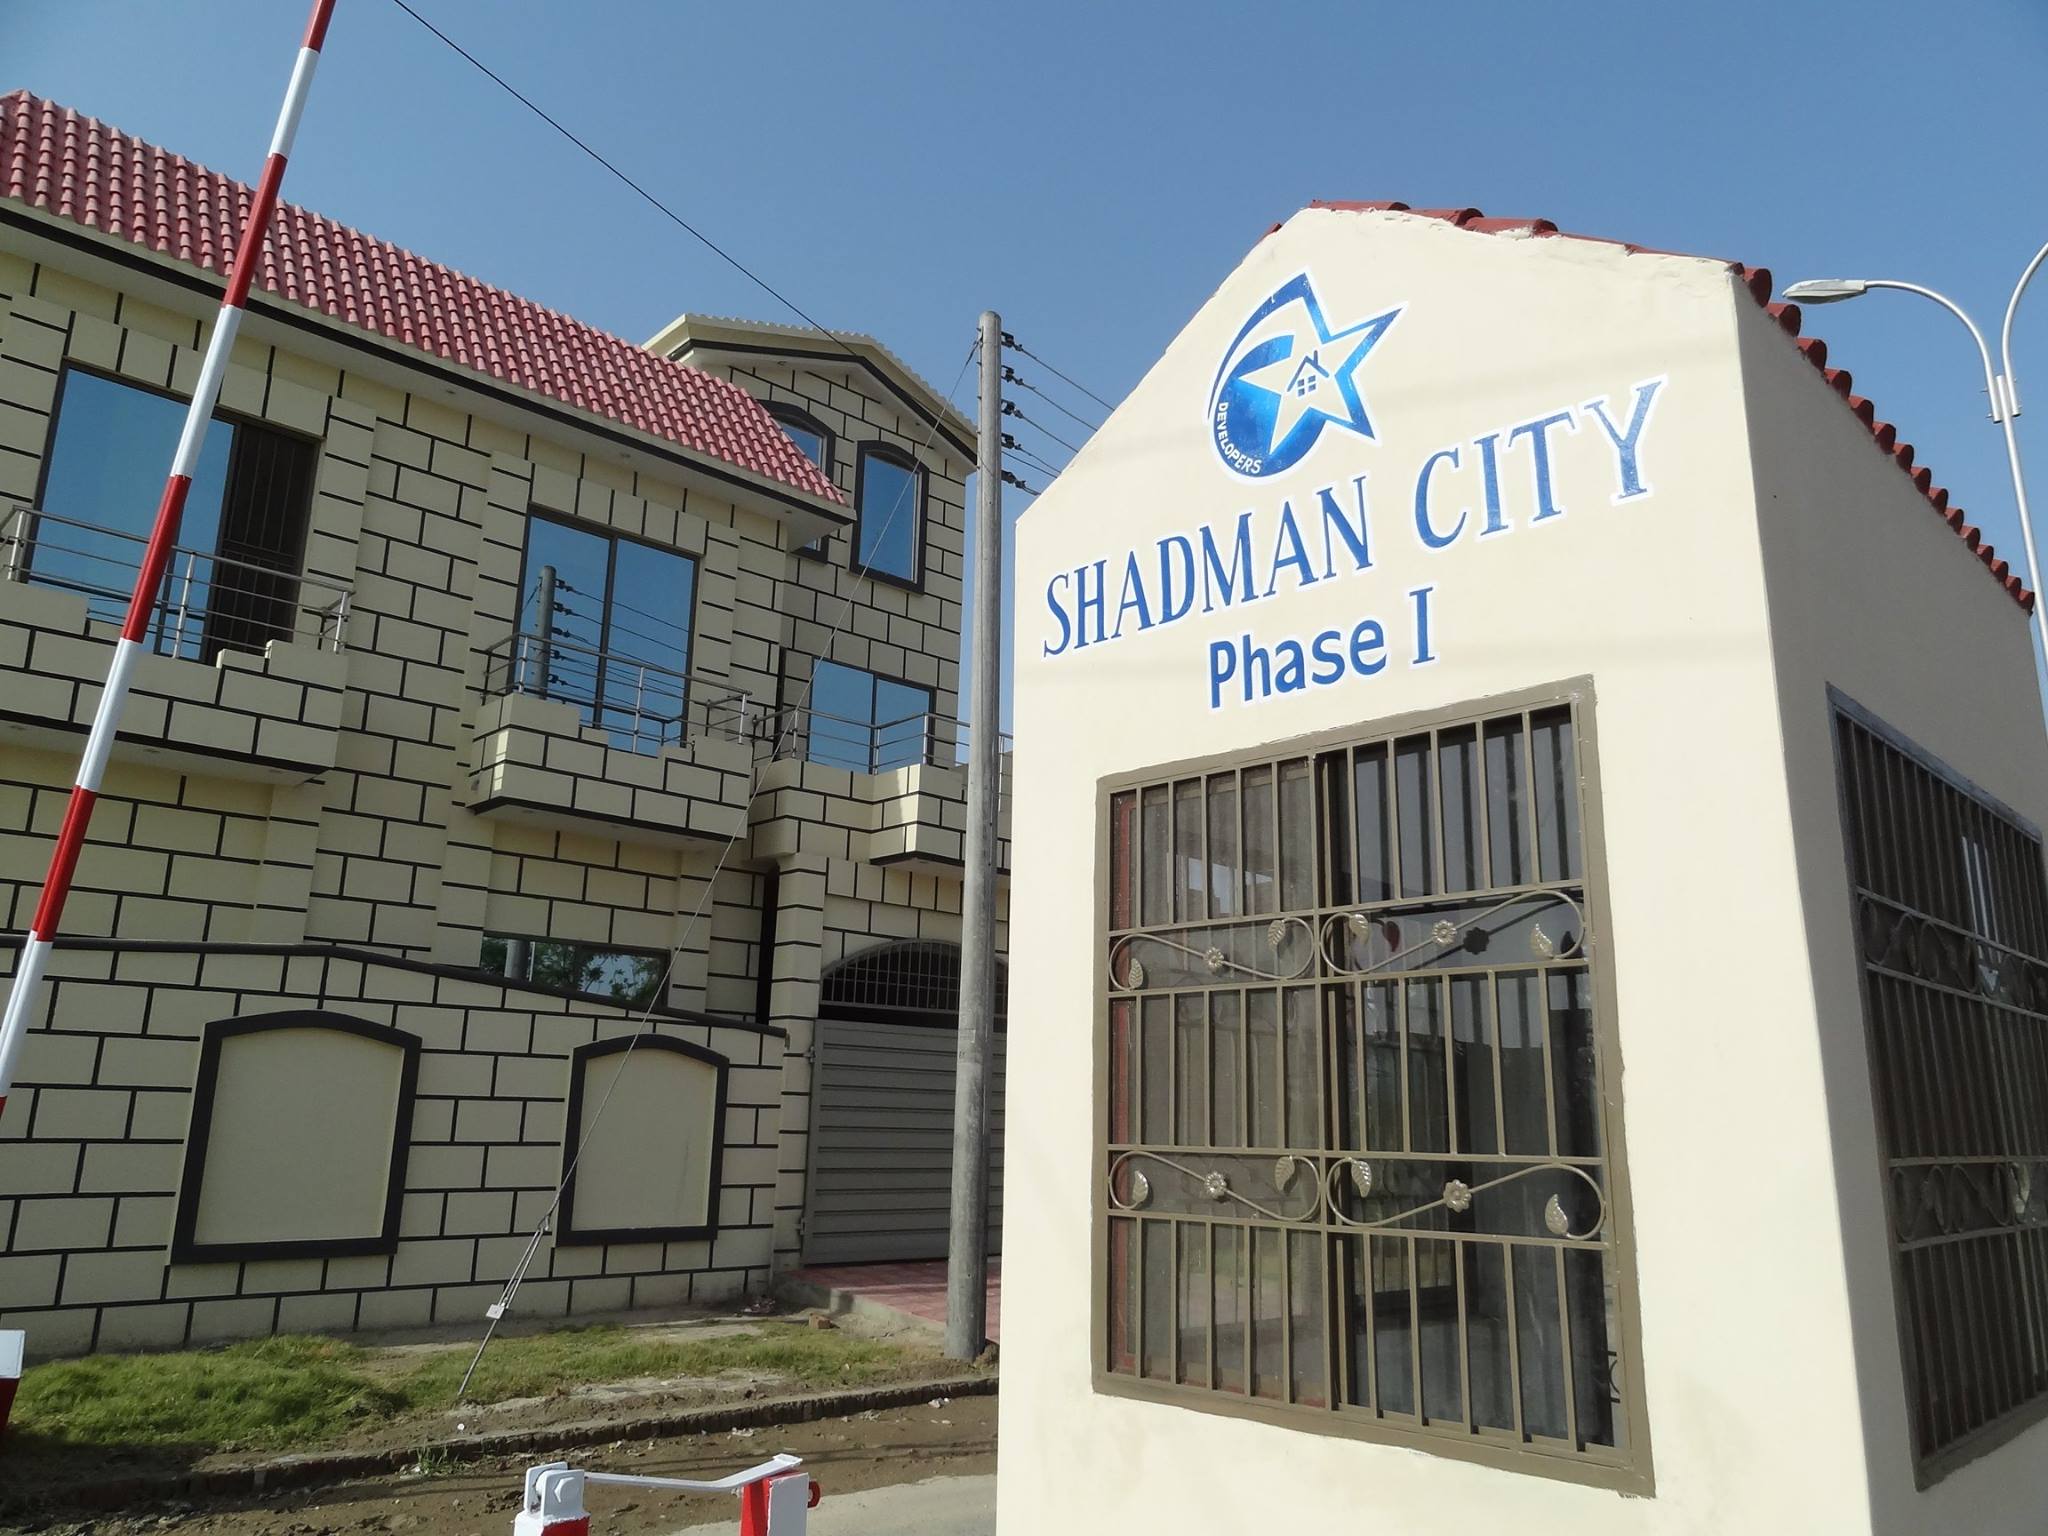 Shadman City Phase 1